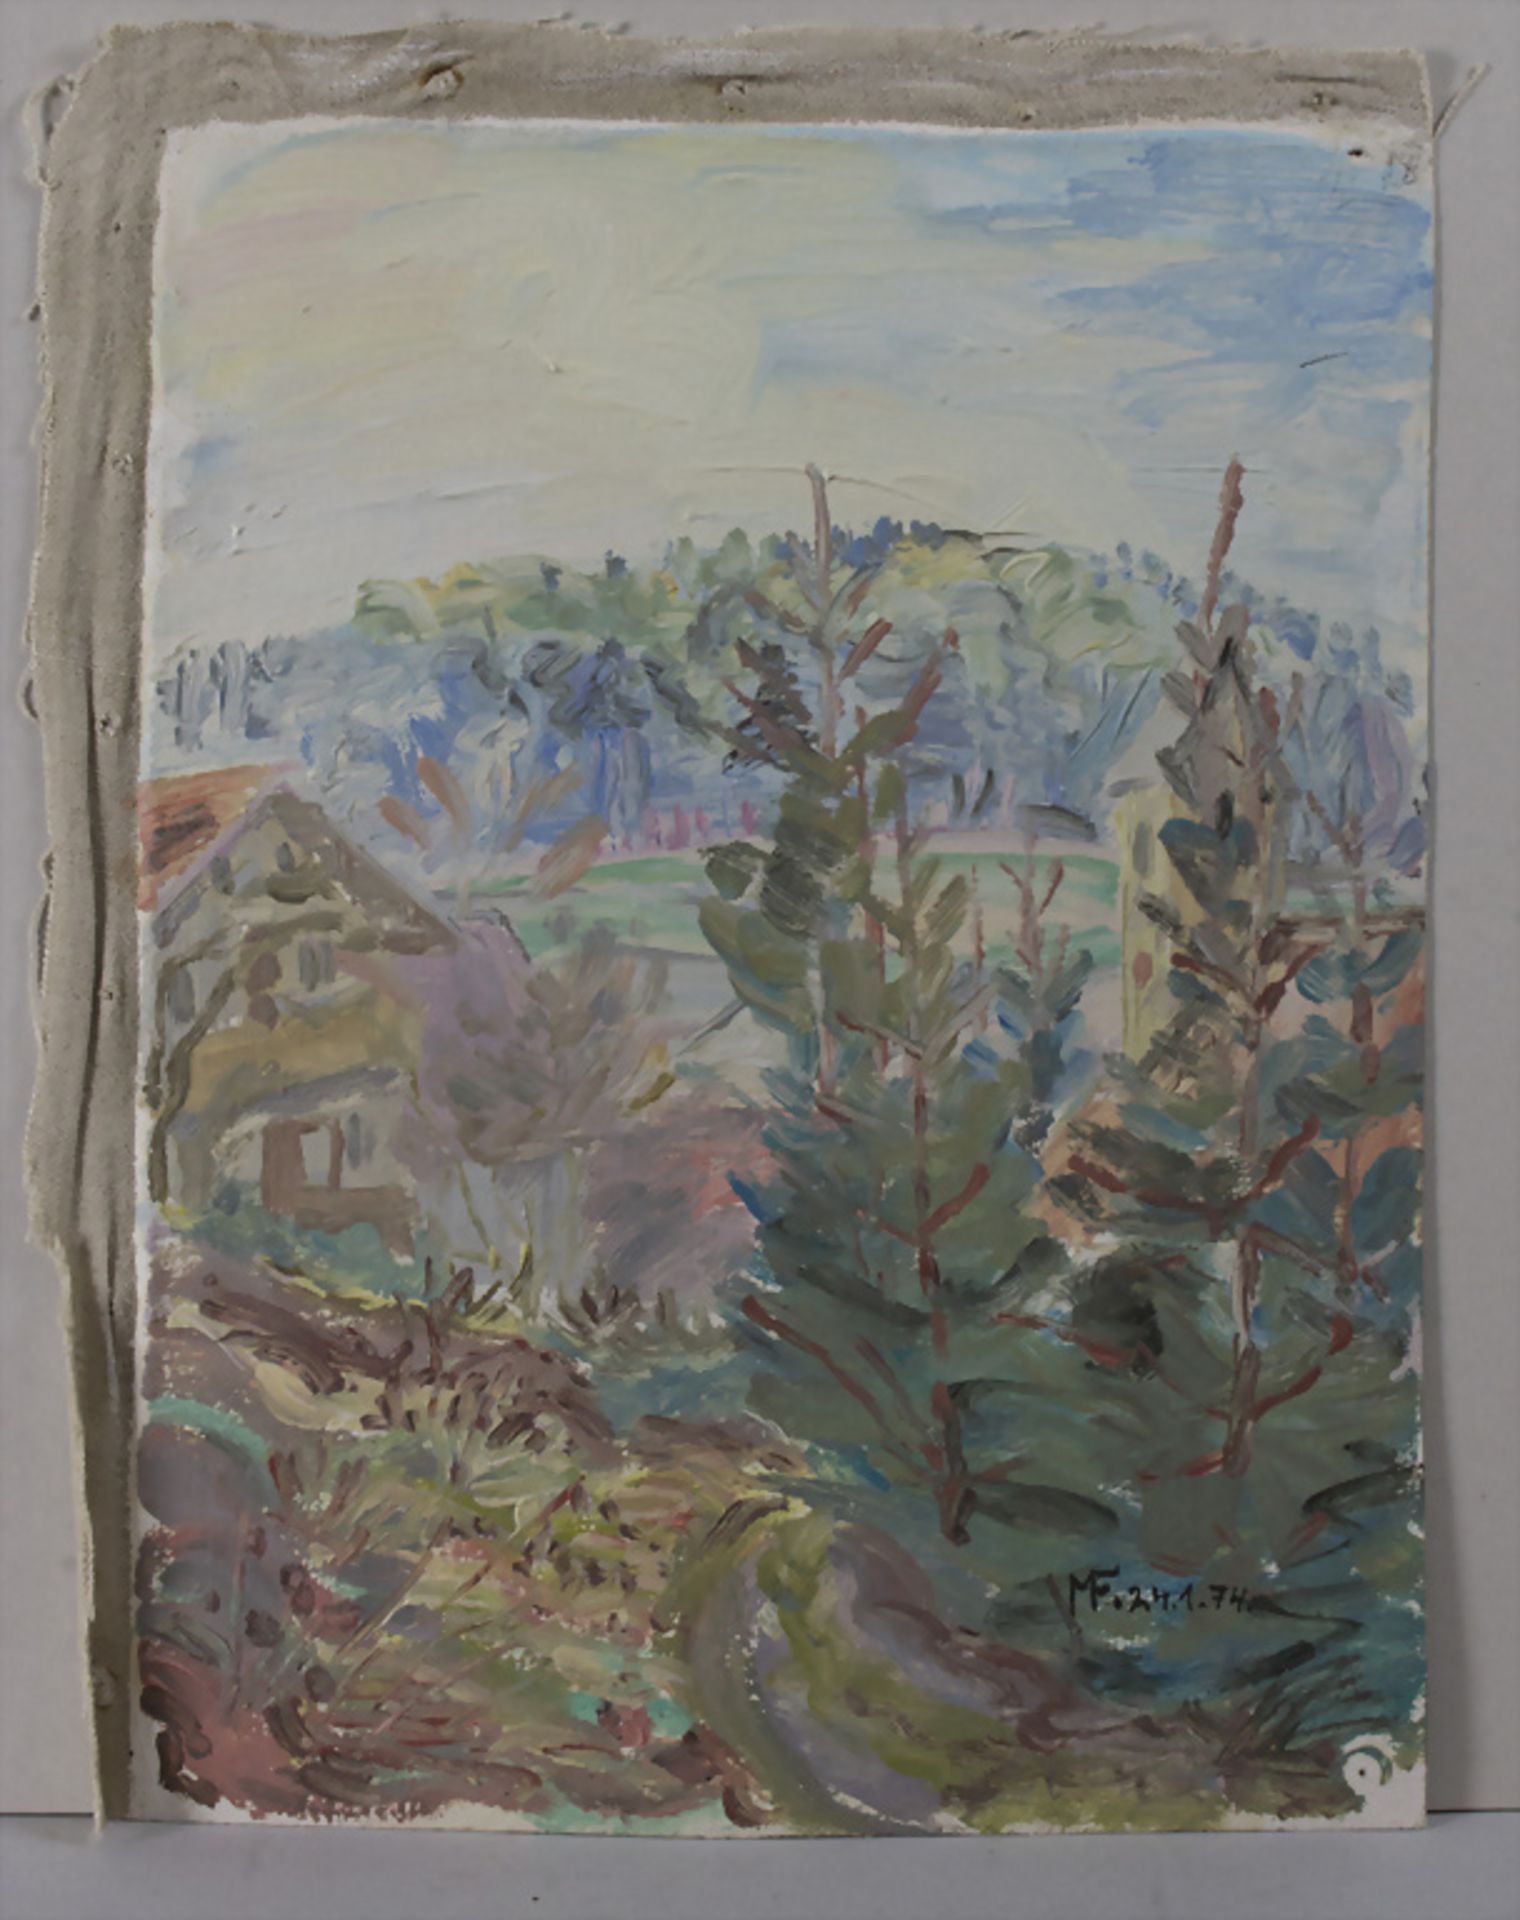 Max Fritsch, 'Impressionistische Landschaft' / 'An impressionistic landscape', 1974